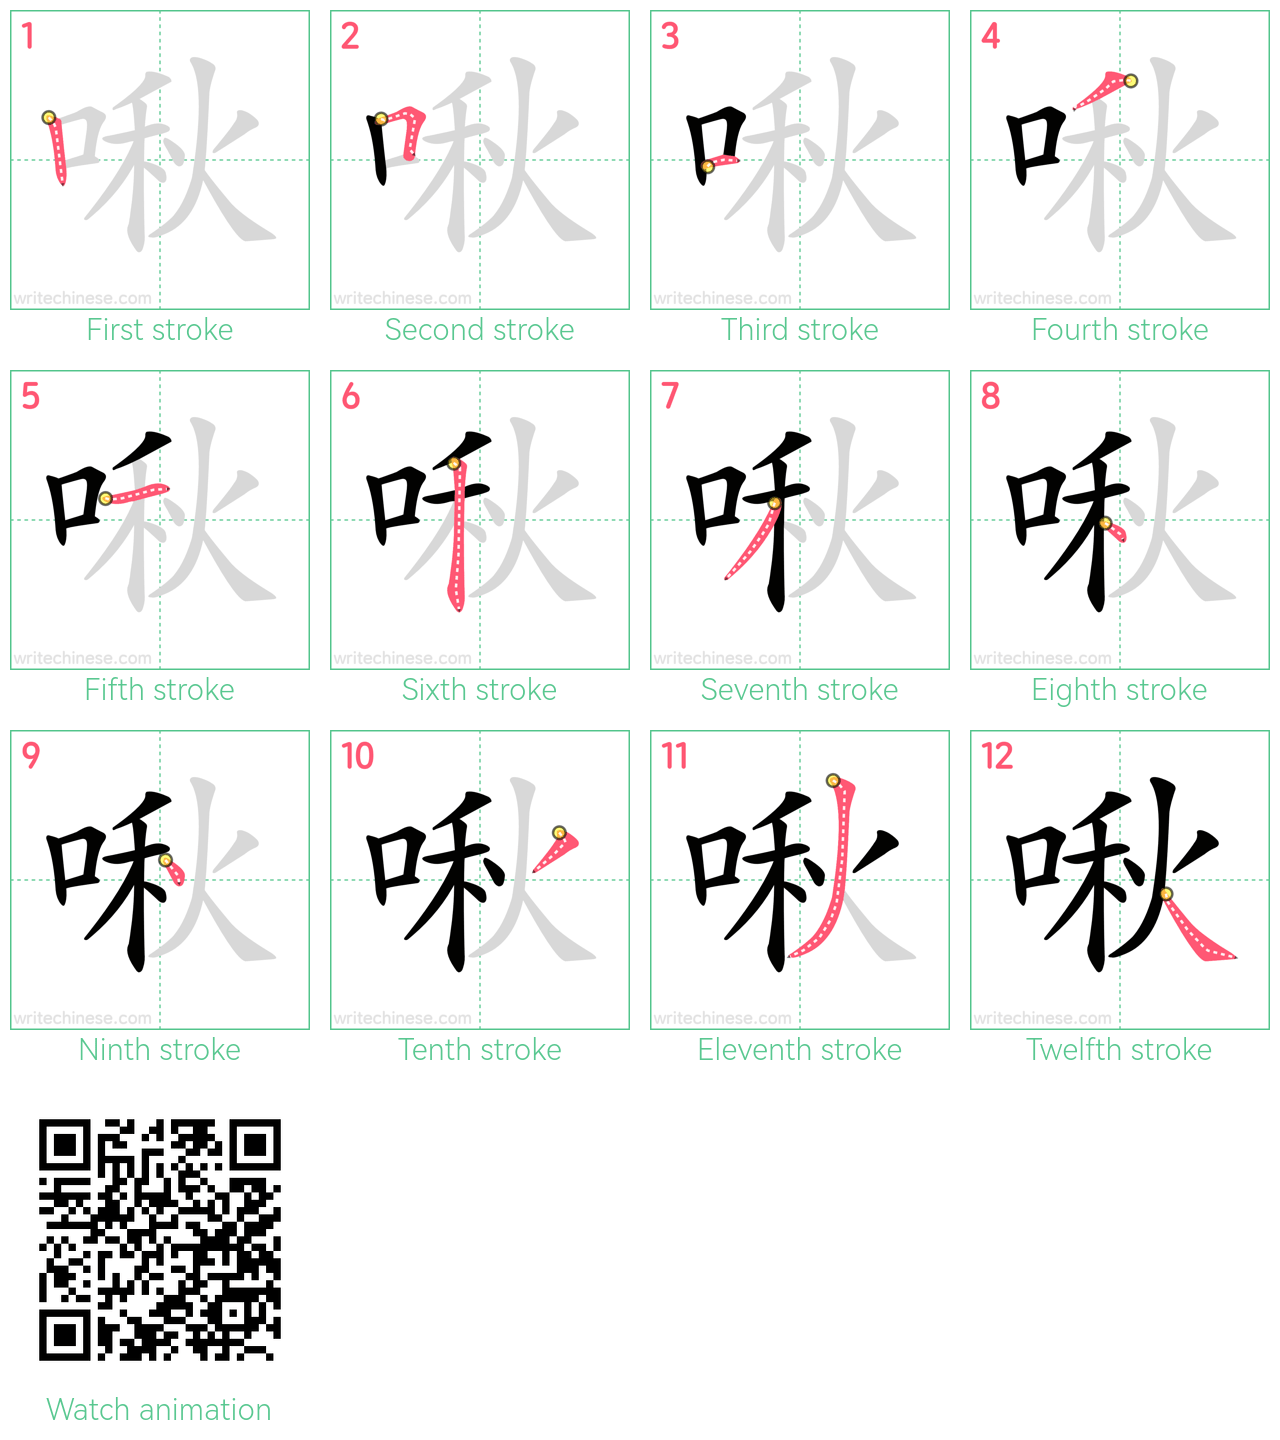 啾 step-by-step stroke order diagrams